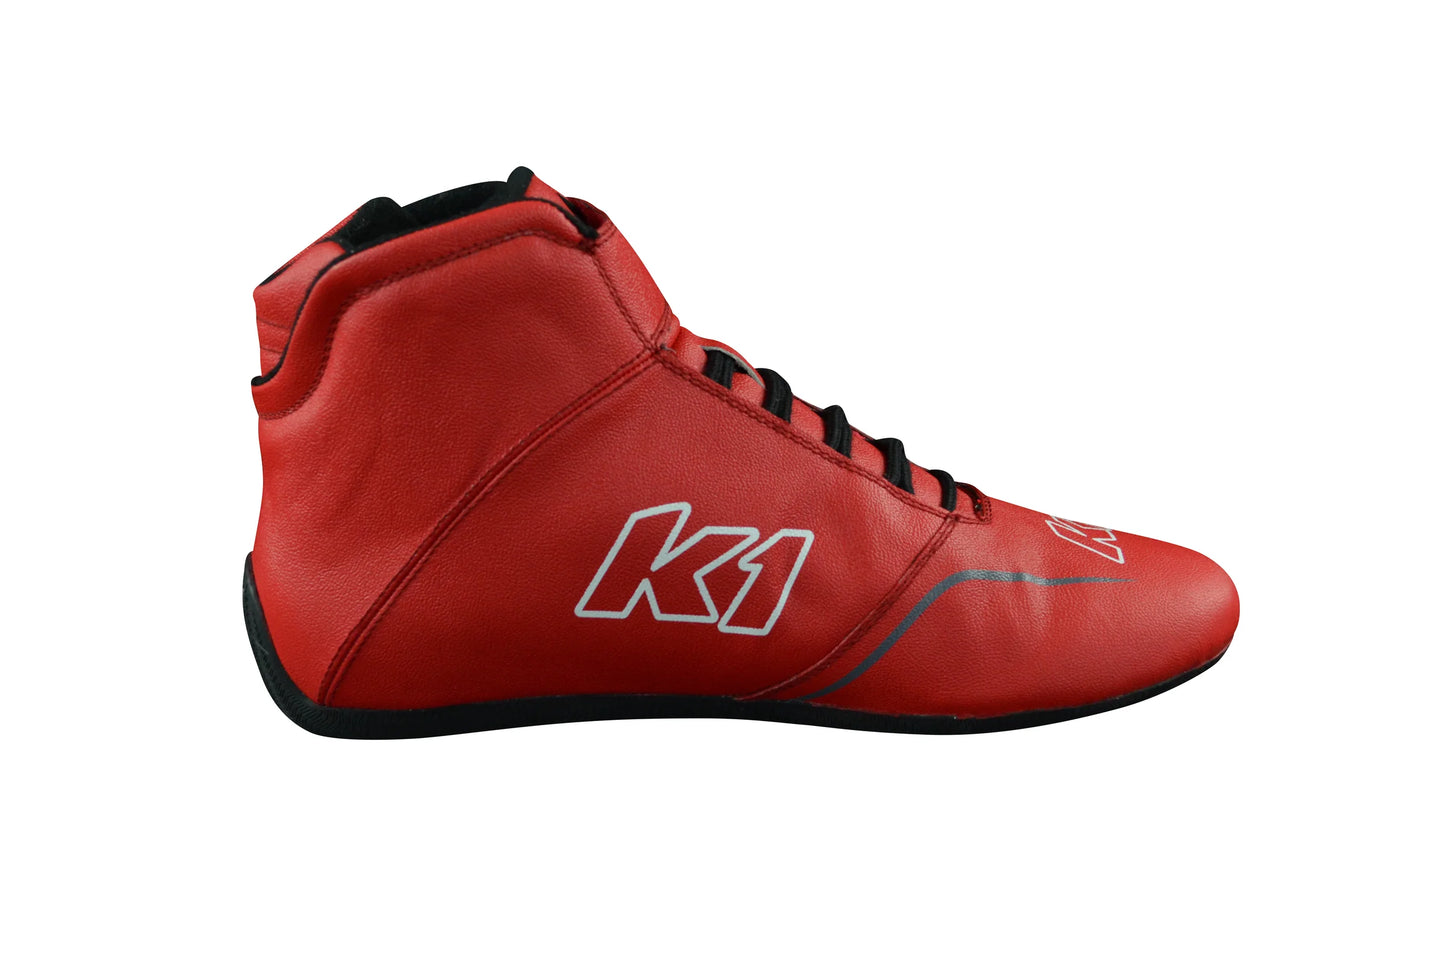 K1 GTX-1 Red Nomex Racing Shoe